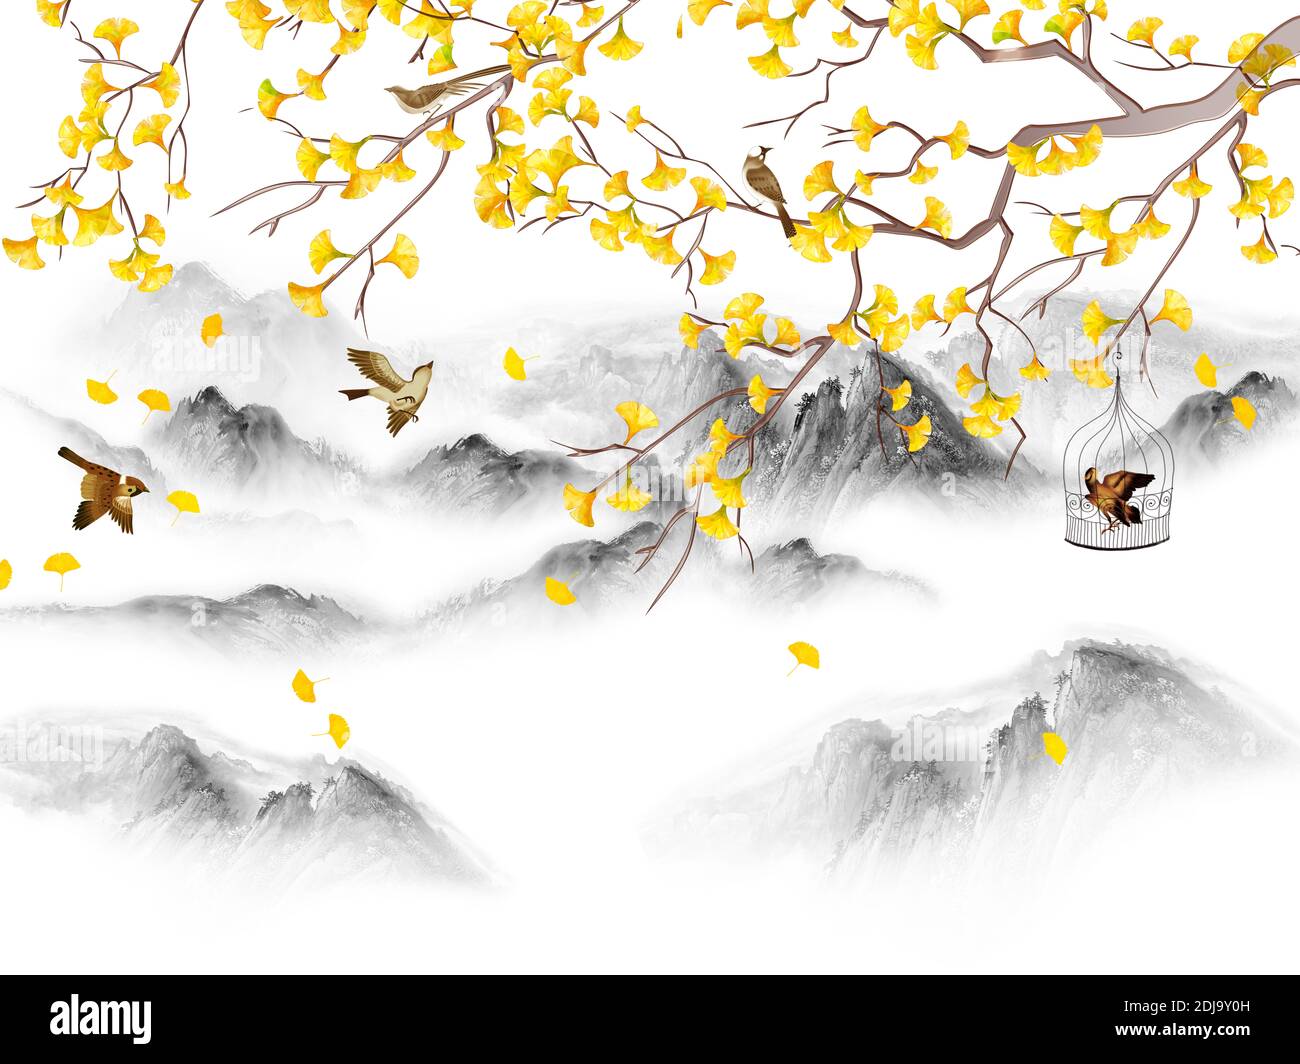 Illustration du paysage, collines, brouillard forestier, branche d'arbre avec feuilles jaunes, oiseaux bruns, un oiseau dans une cage Banque D'Images